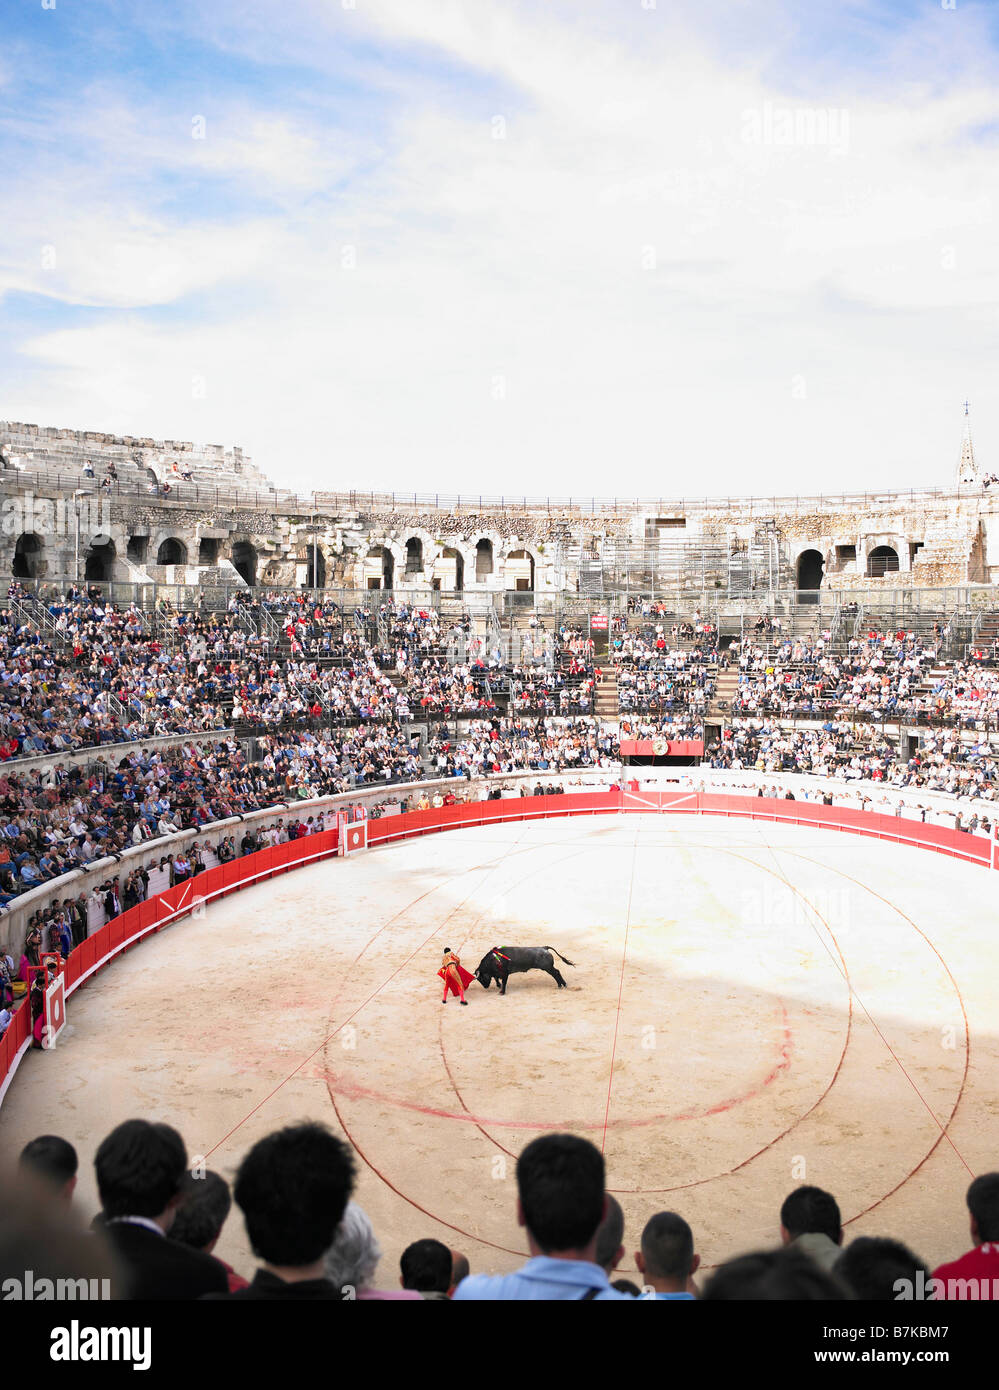 bull fight in arena Stock Photo